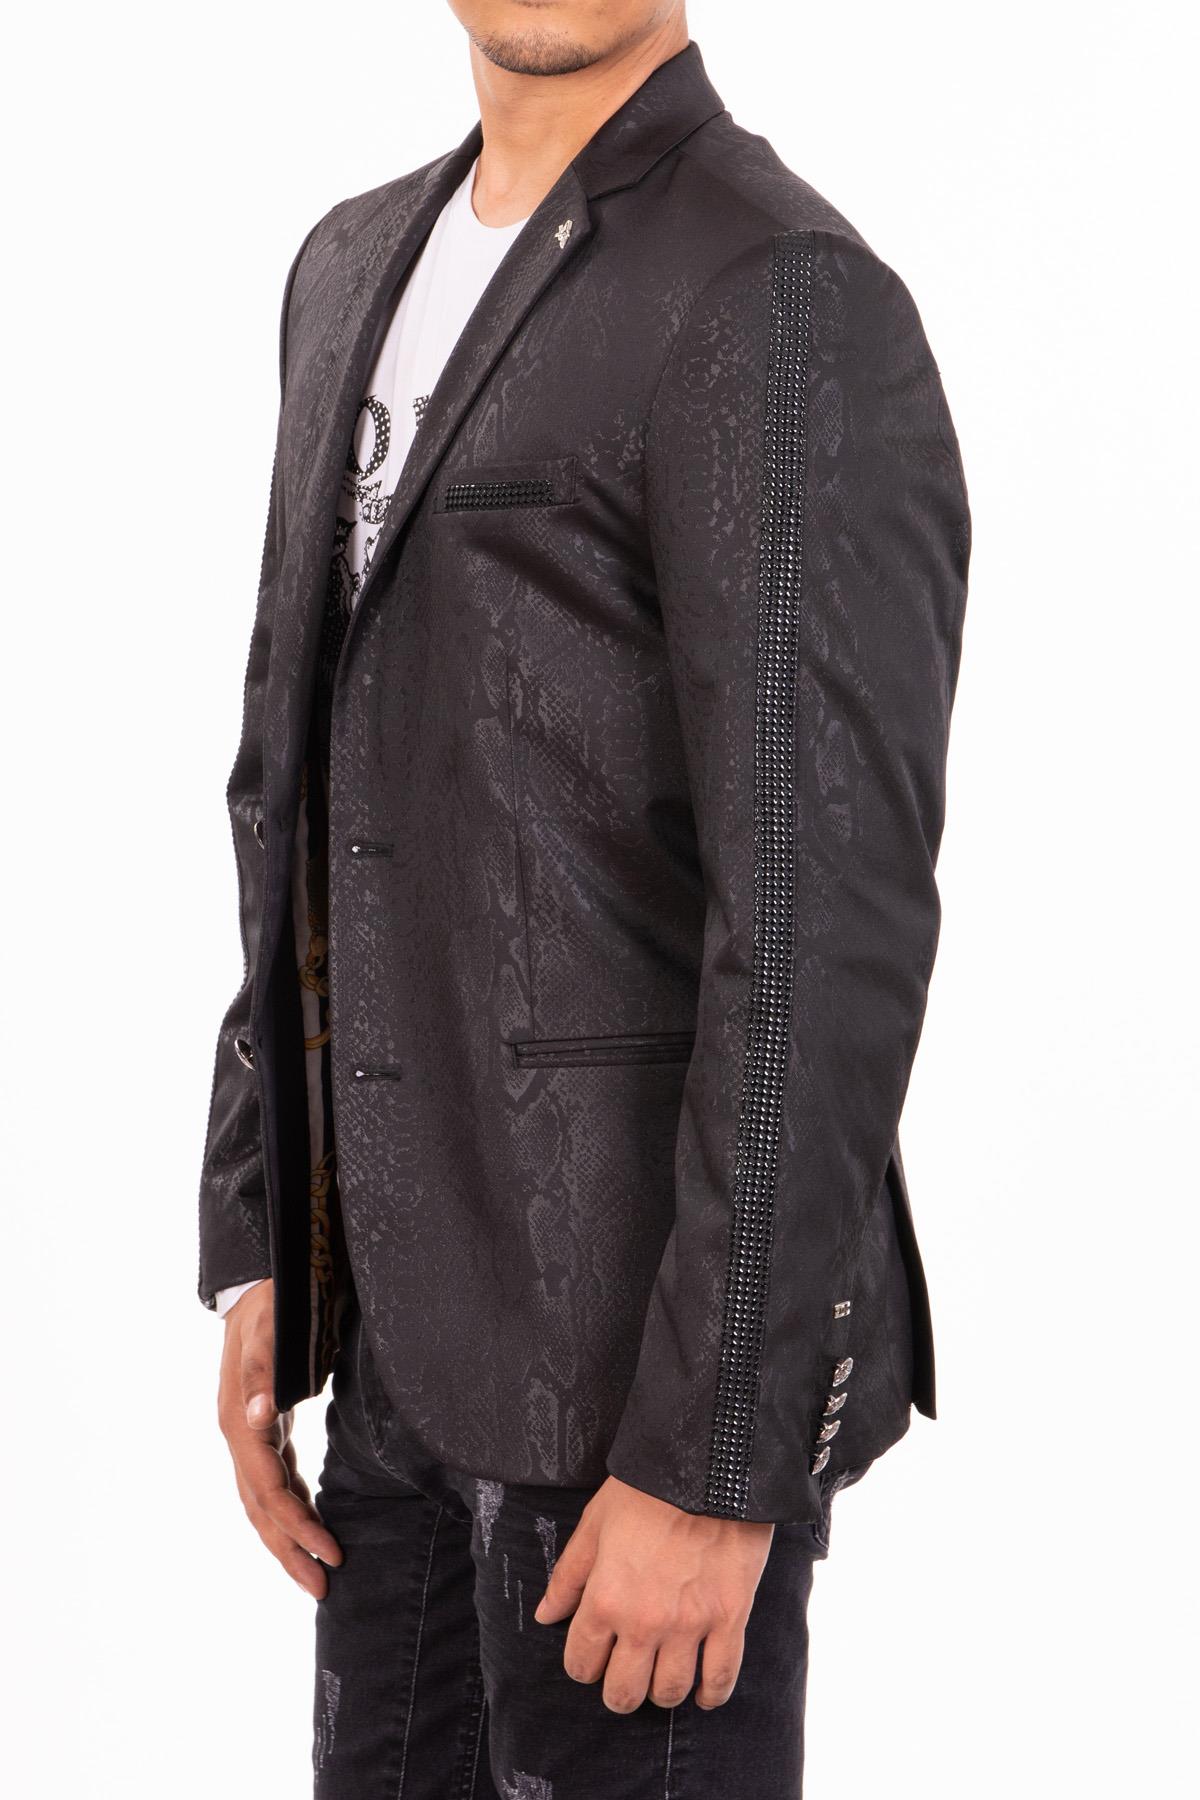 Siyah yılan derisi taş detaylı ceket | Mondo.com.tr